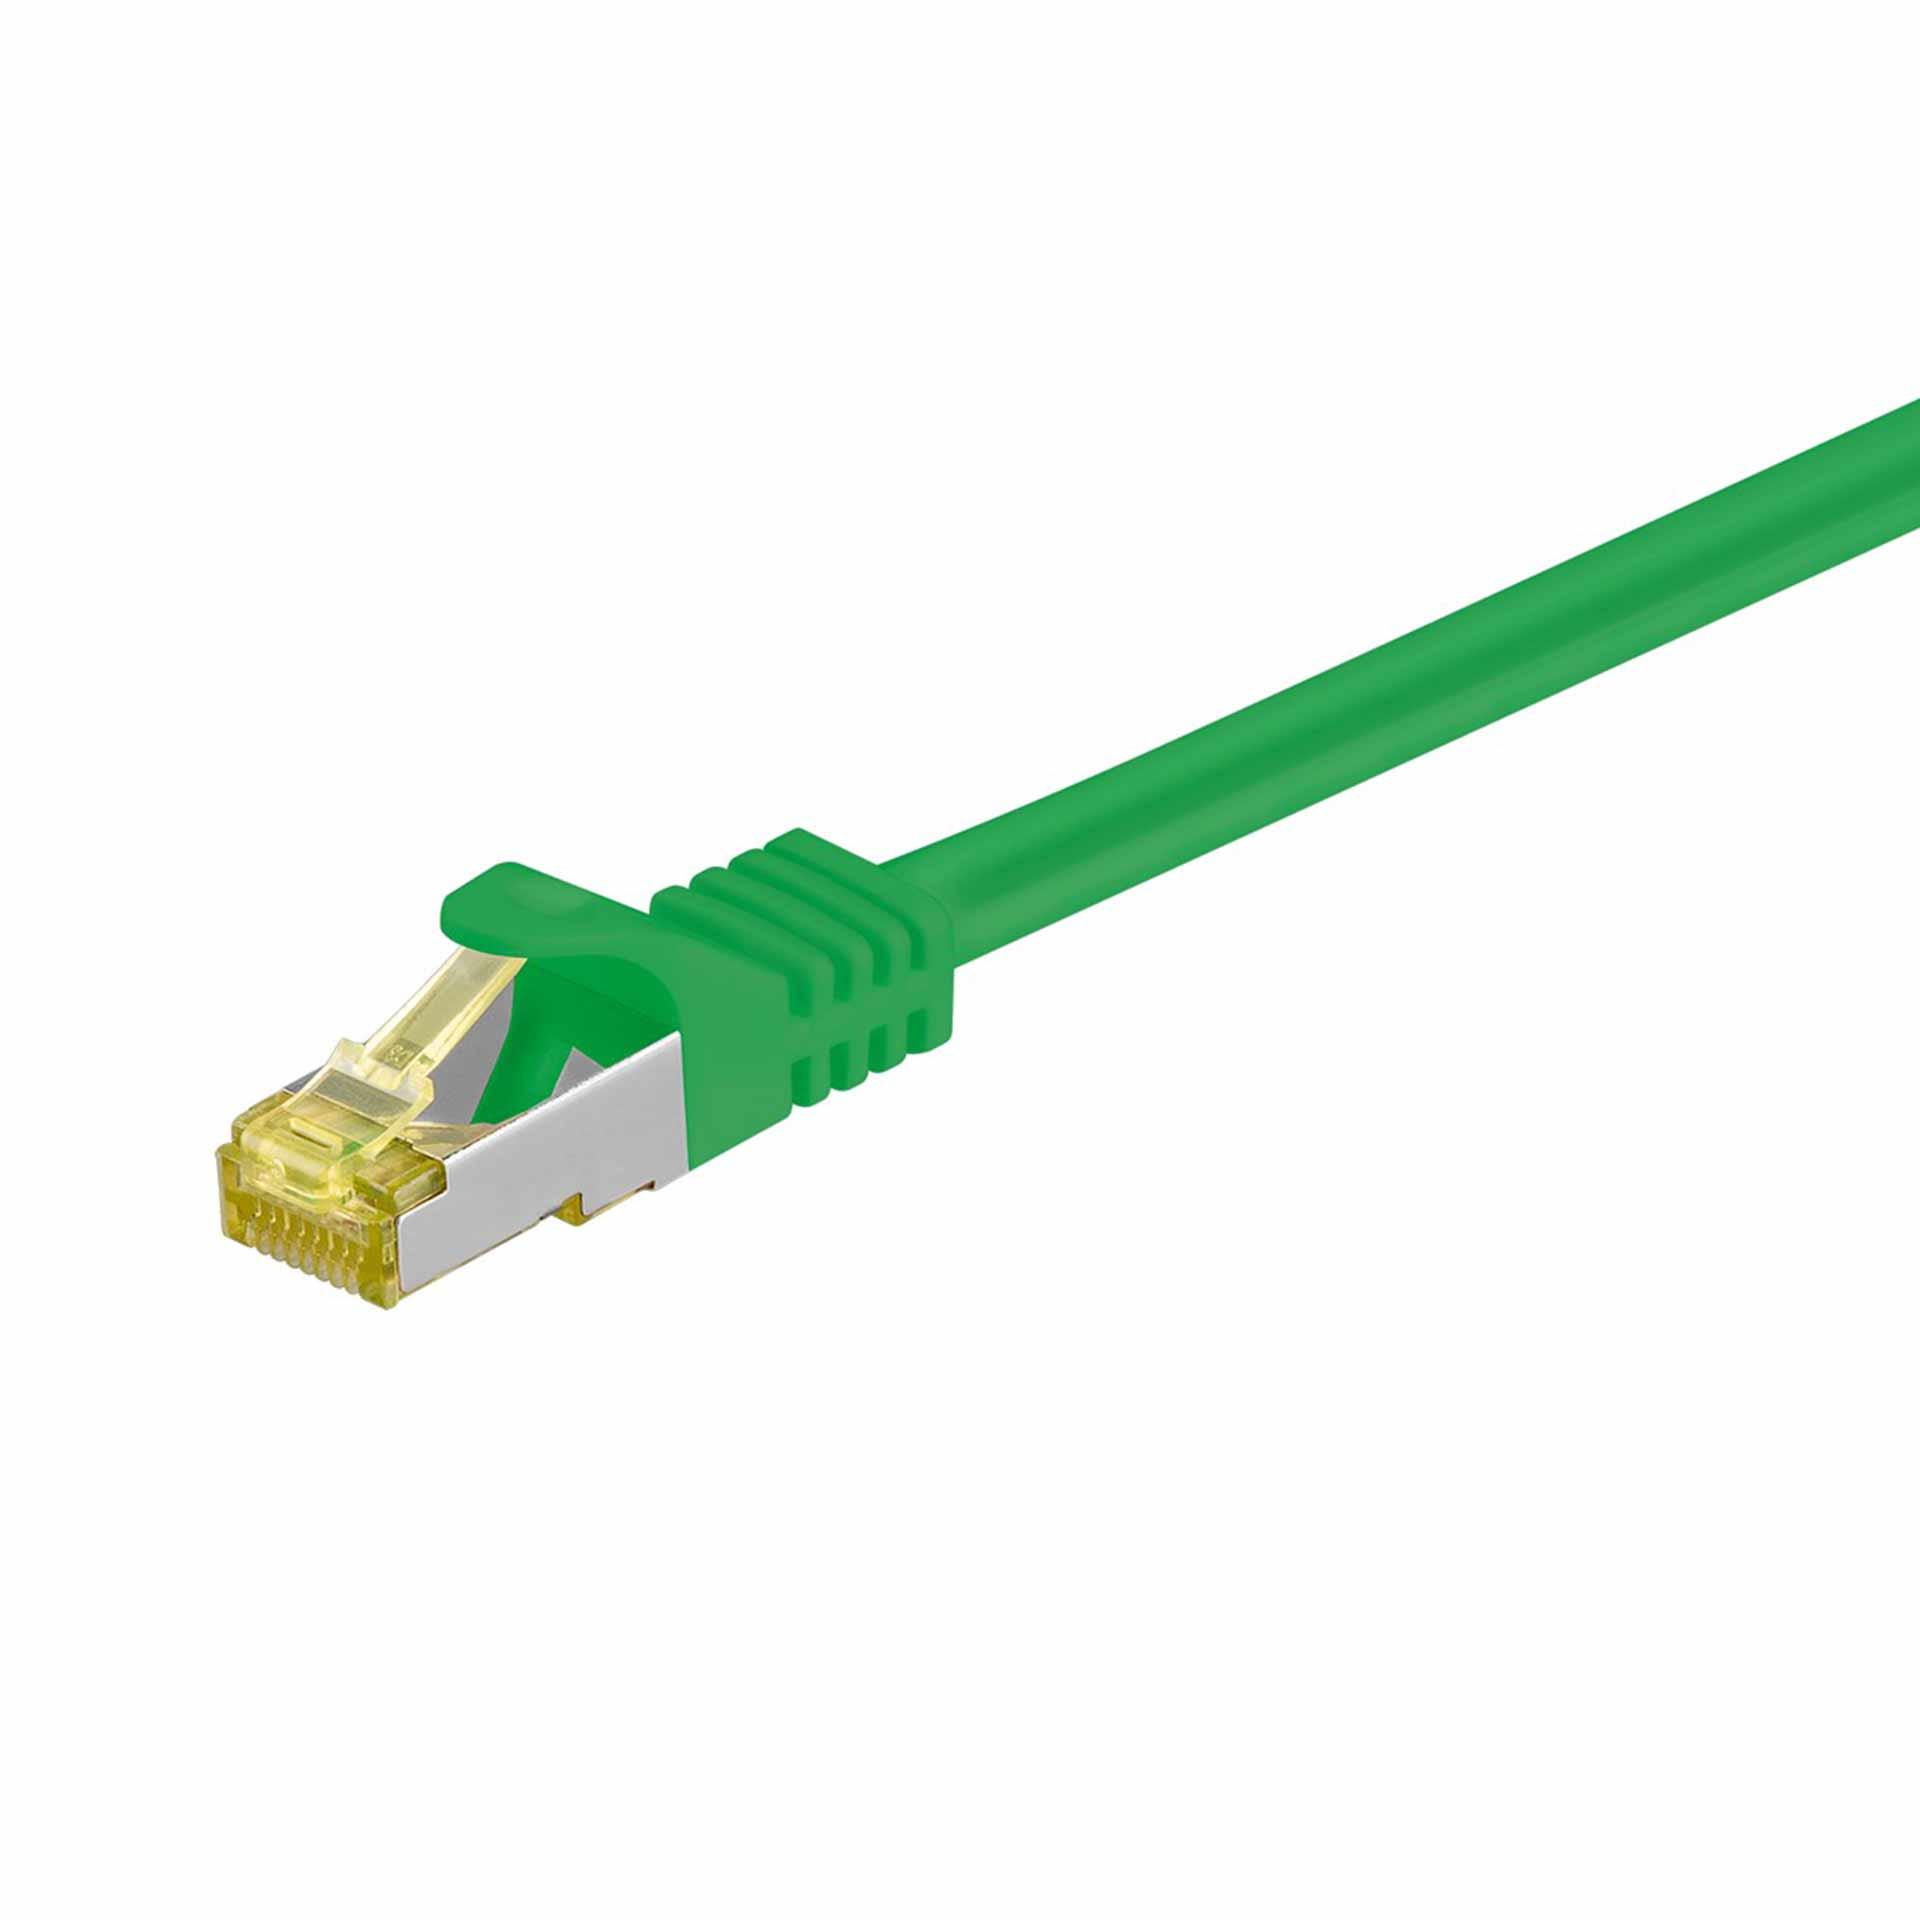 CAT 6A câble de raccordement S/FTP (PiMF),1000mm, vert, LSZH sans halogène, 500 Mhz, câble CAT 7